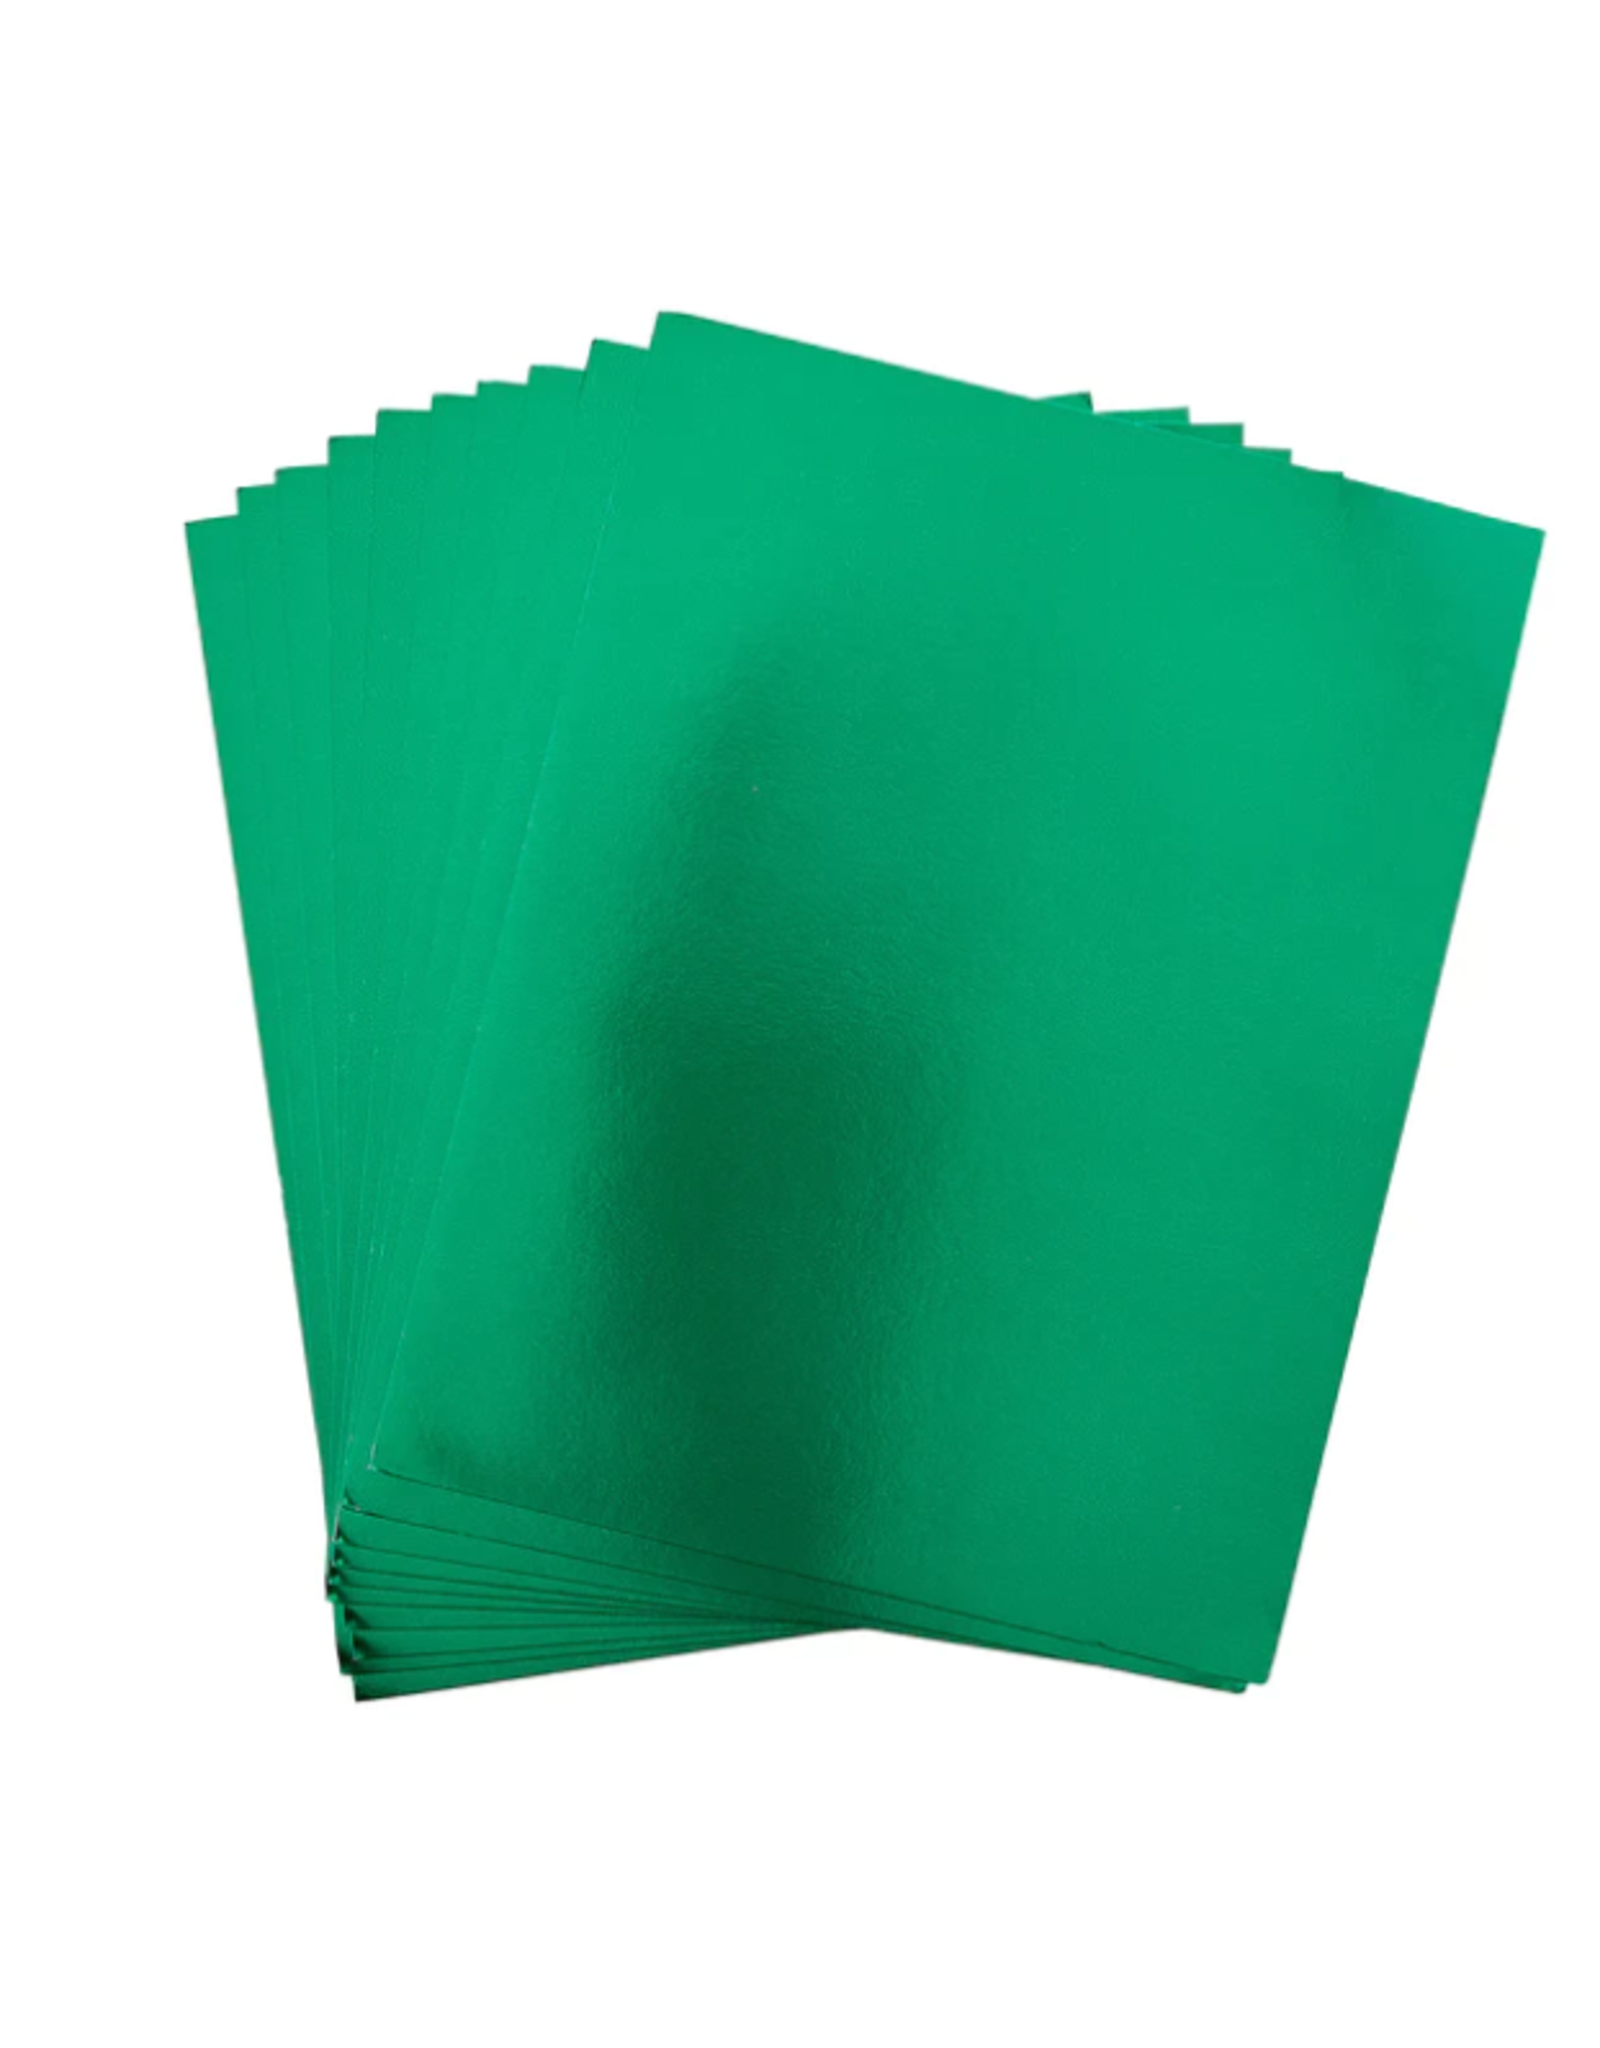 SPELLBINDERS SPELLBINDERS MIRROR GREEN CARDSTOCK 8.5x11 10/PK